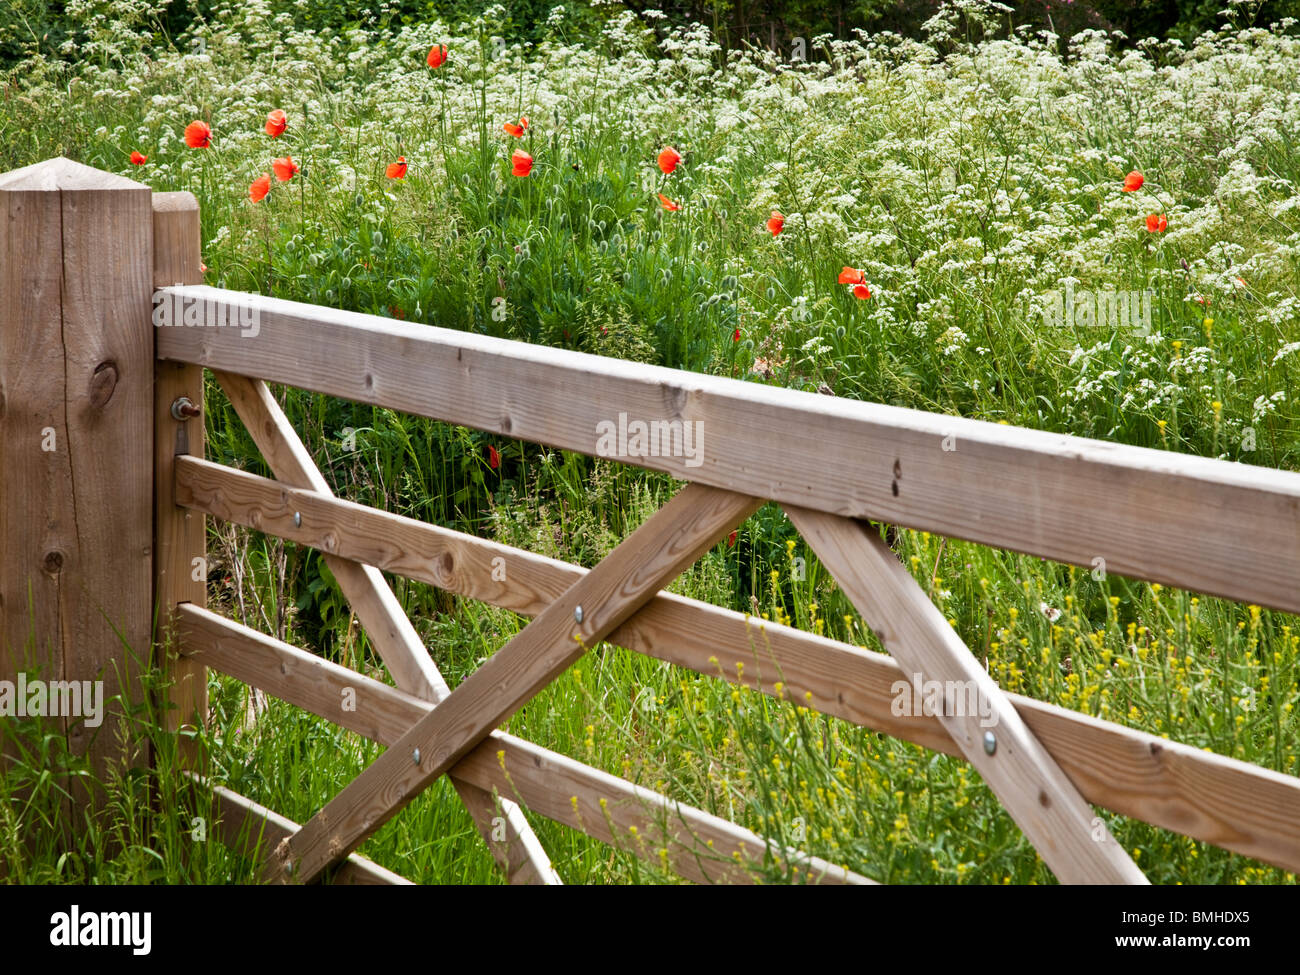 Cinq barreaux en bois dans un domaine de cow parsley et coquelicots rouges sauvages dans la campagne d'été typiquement anglais. Banque D'Images